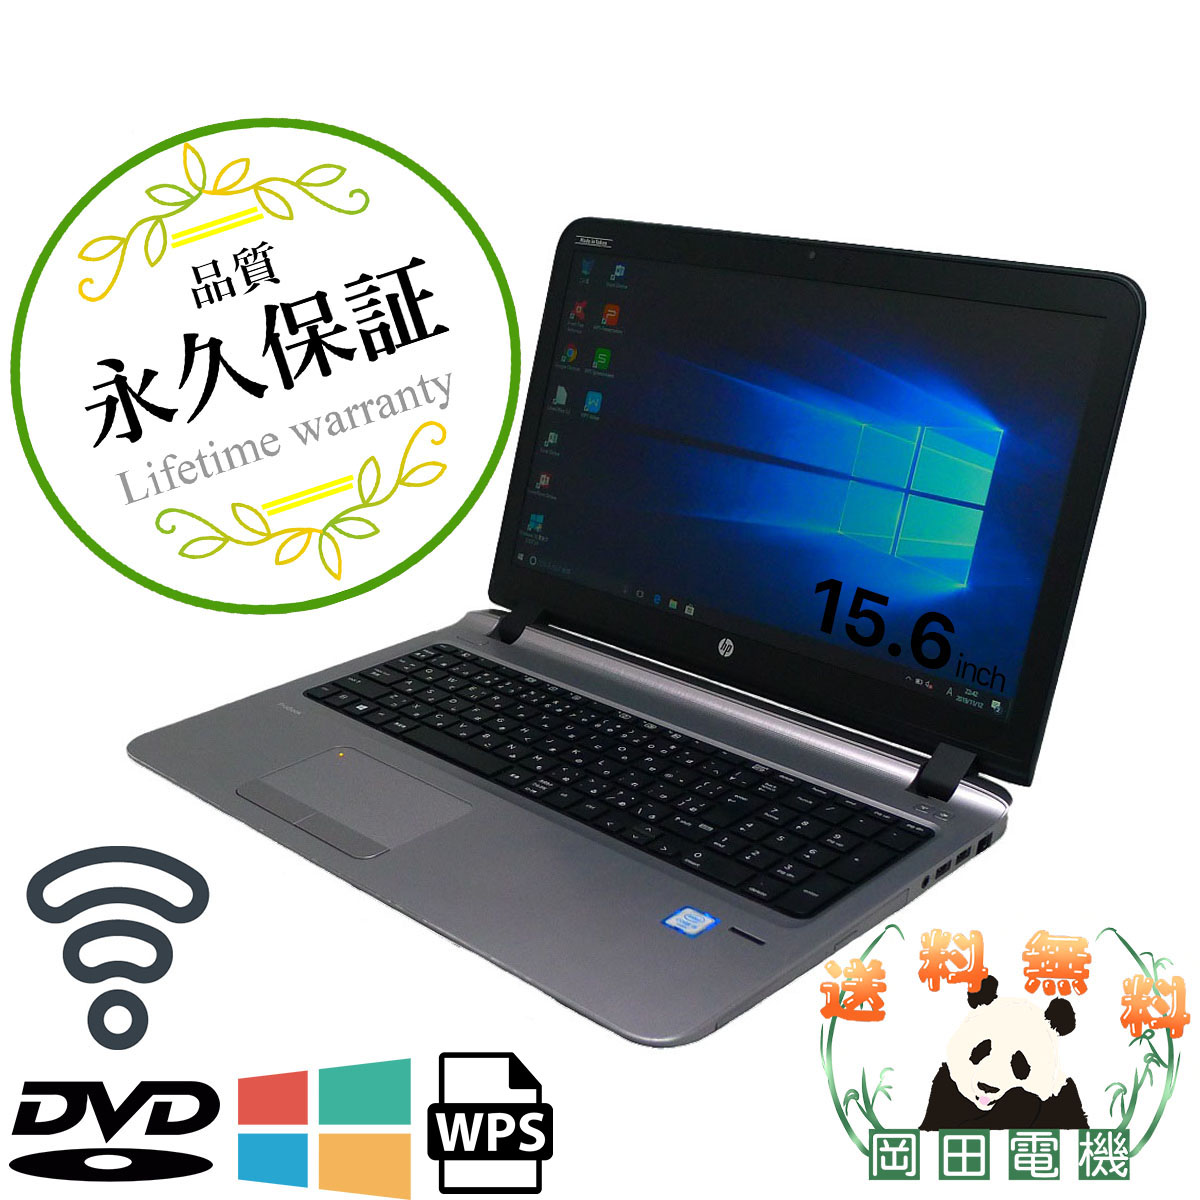 【楽天市場】HP ProBook 450 G3i3 4GB HDD500GB DVD-ROM 無線LAN Windows10